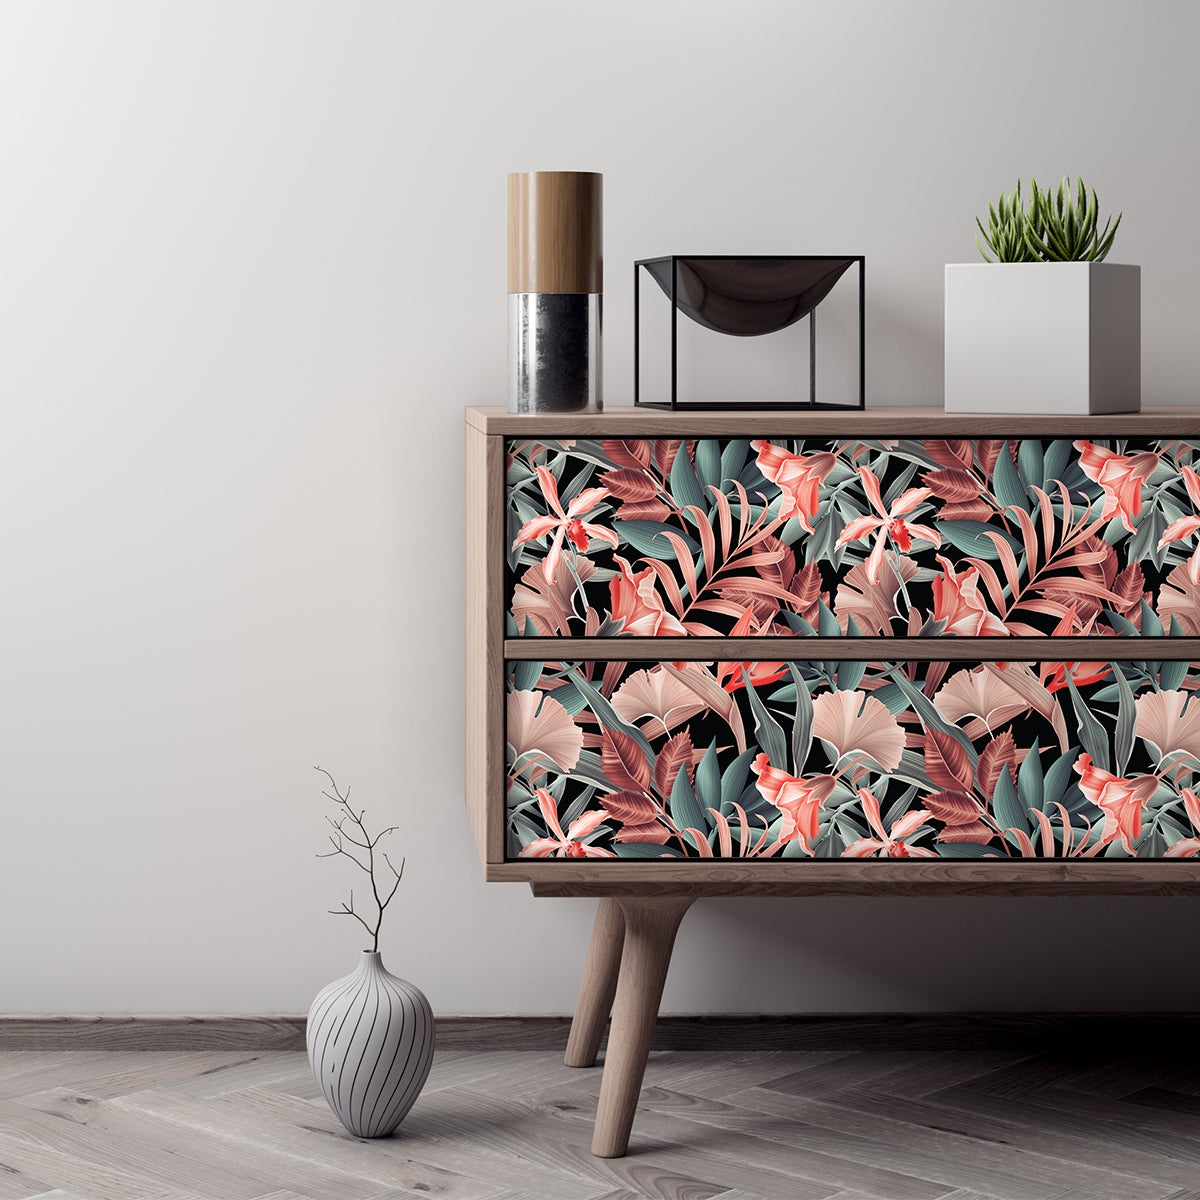 Vinilo muebles escandinavos diseño de madera negro - adhesivo de pared -  revestimiento sticker mural decorativo - 60x90cm